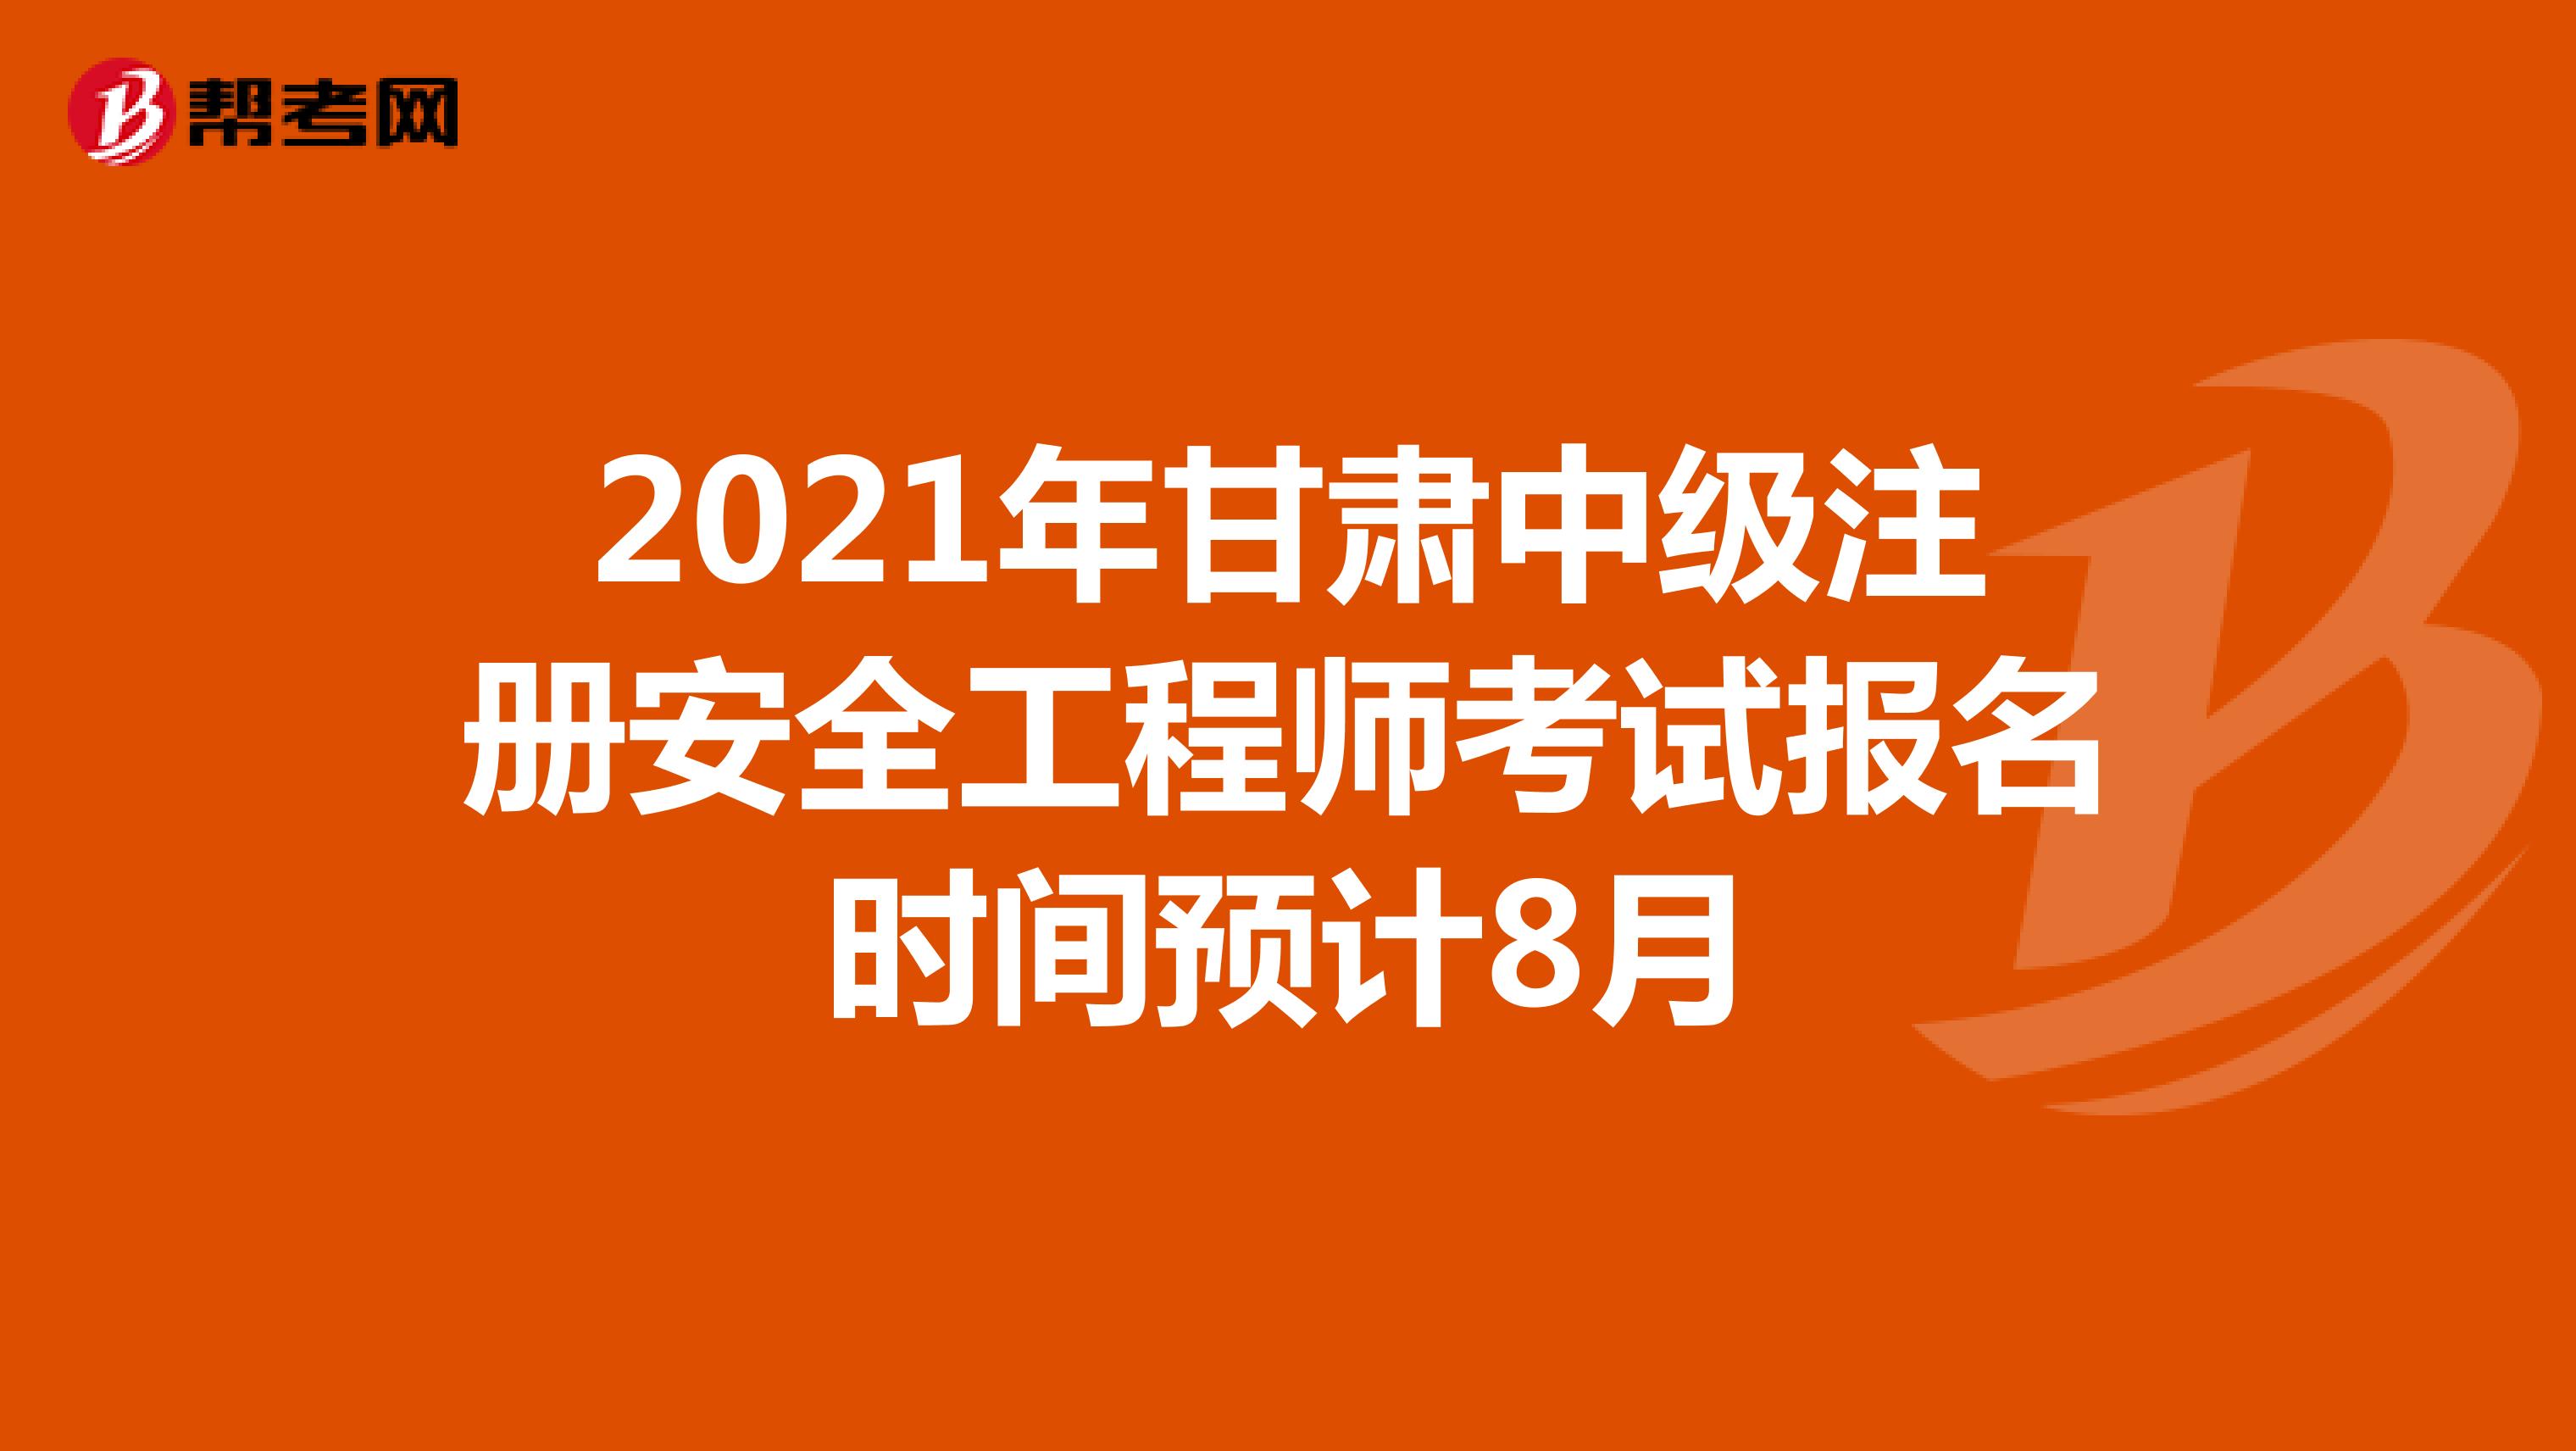 2021年甘肃中级注册安全工程师考试报名时间预计8月